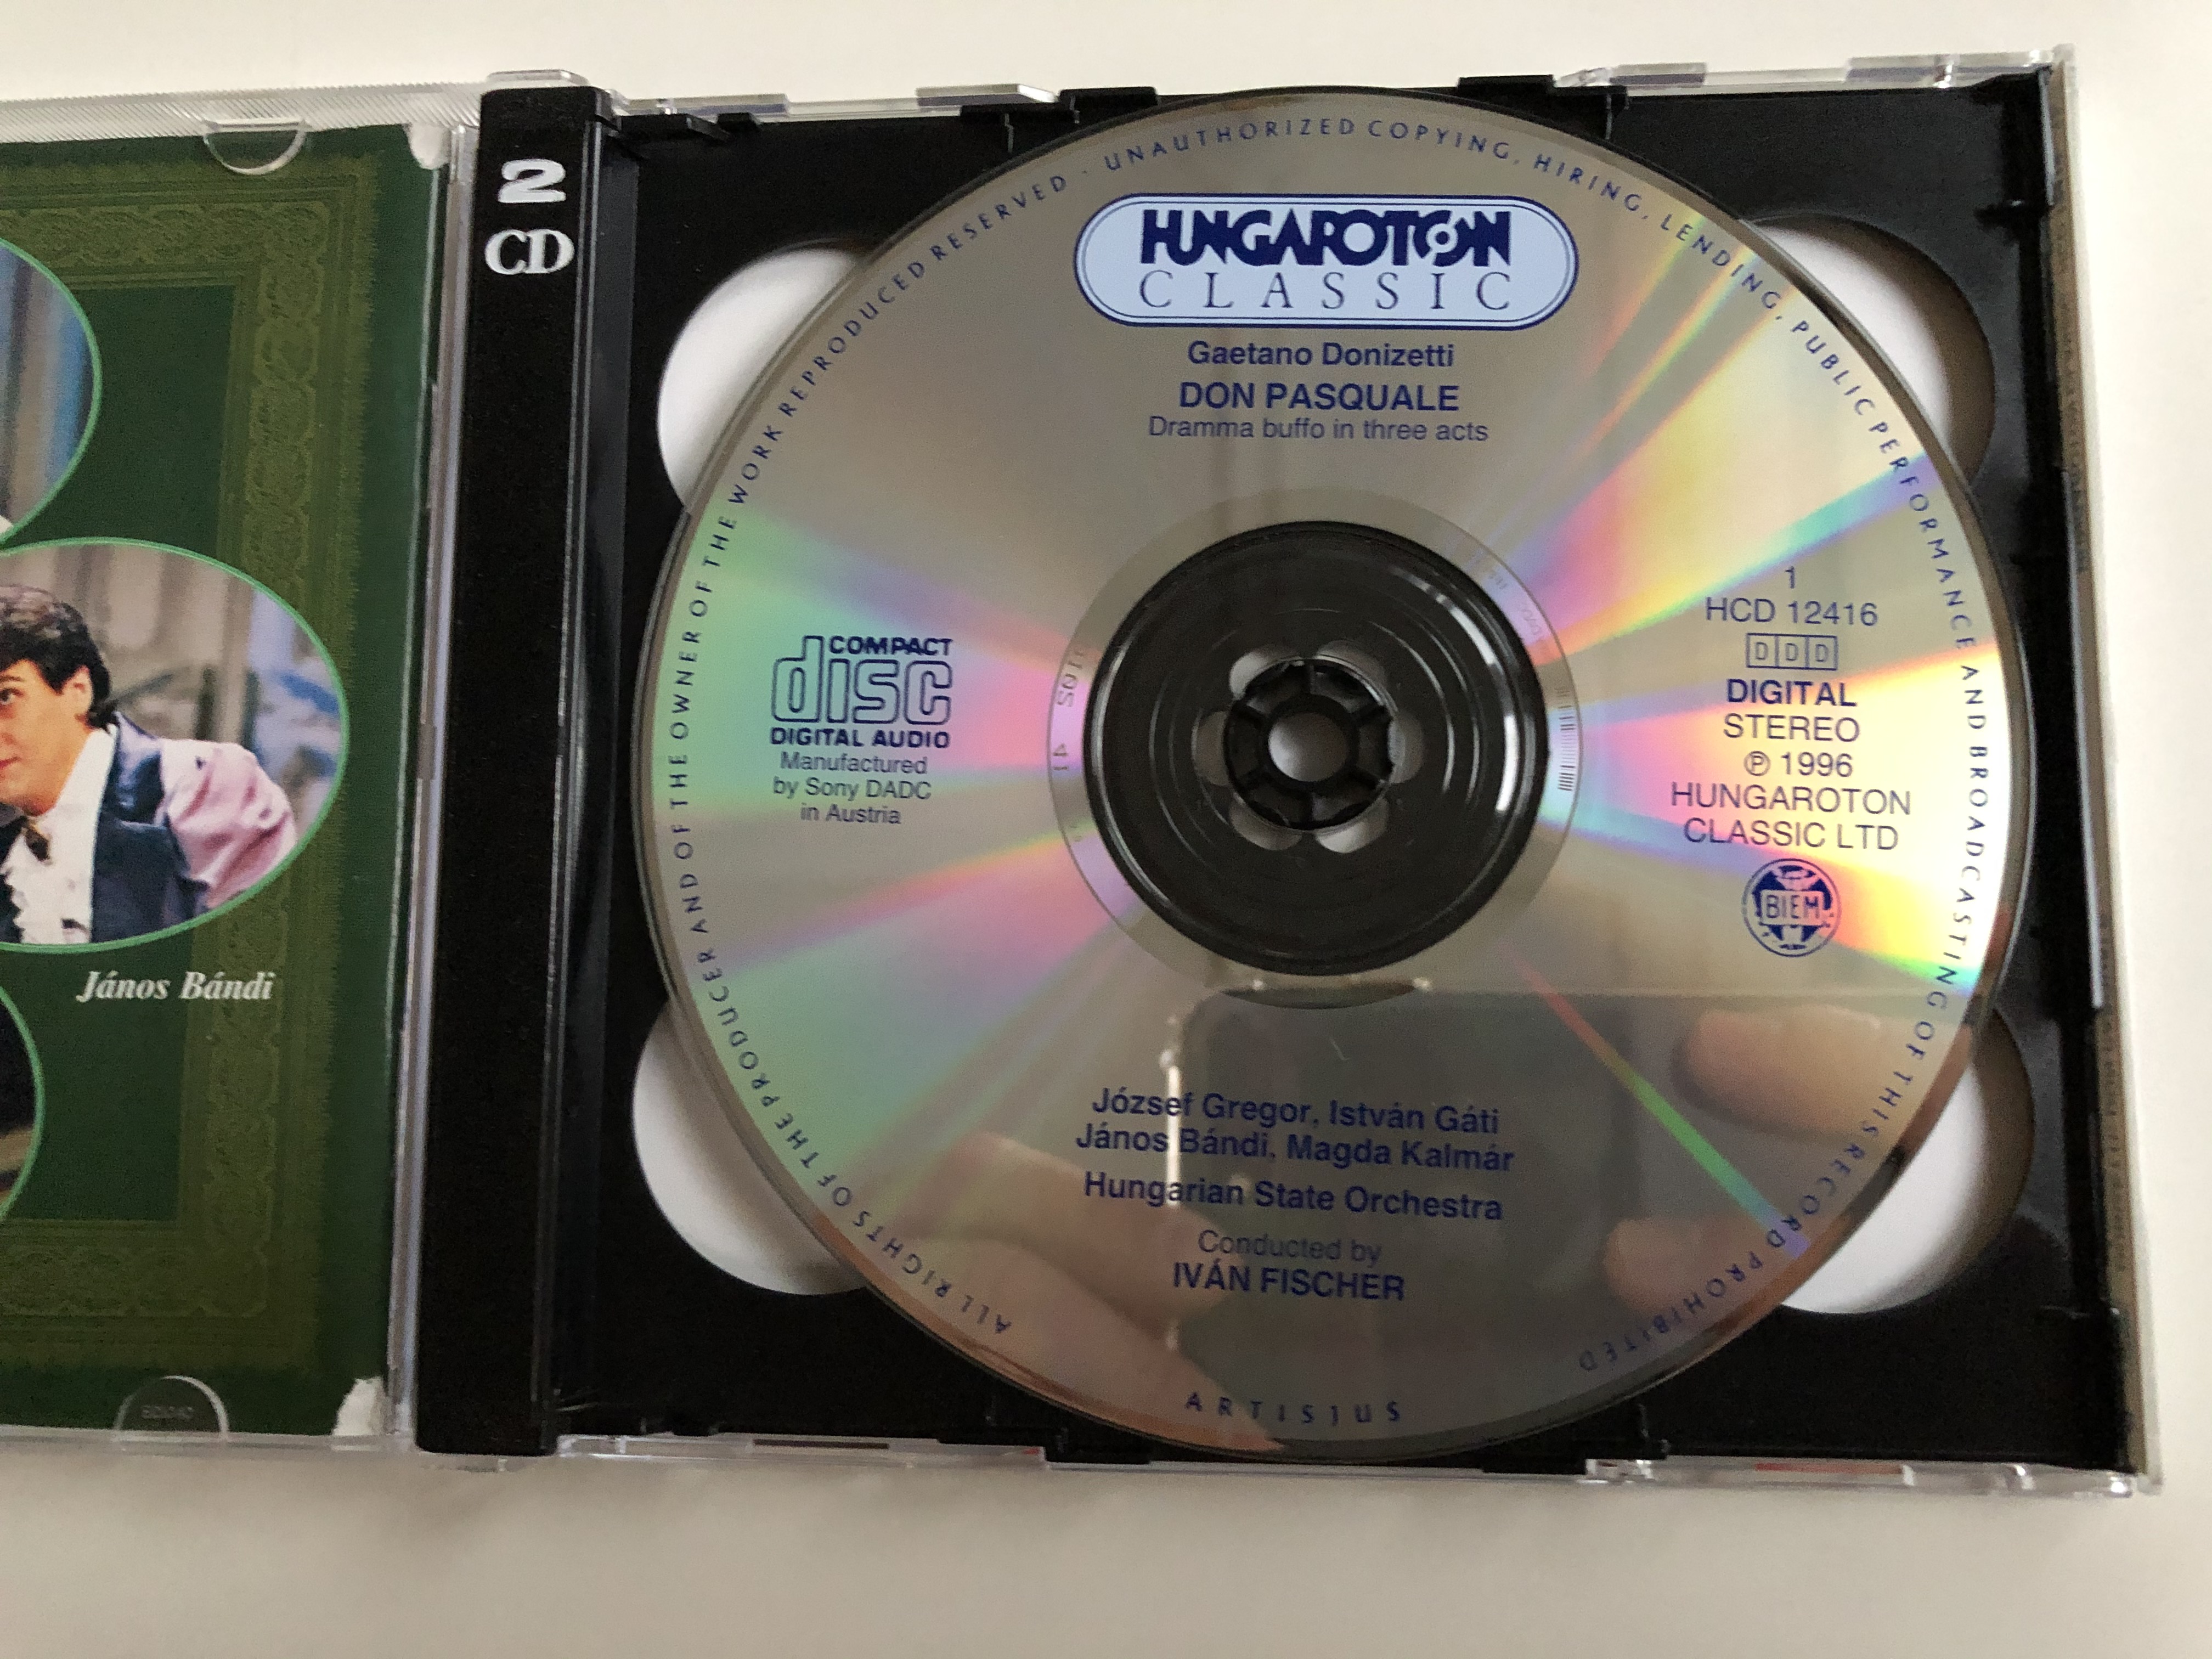 donizetti-don-pasquale-j-zsef-gregor-j-nos-b-ndi-magda-kalm-r-istv-n-g-ti-iv-n-fischer-hungaroton-classic-2x-audio-cd-1996-stereo-hcd-12416-17-11-.jpg